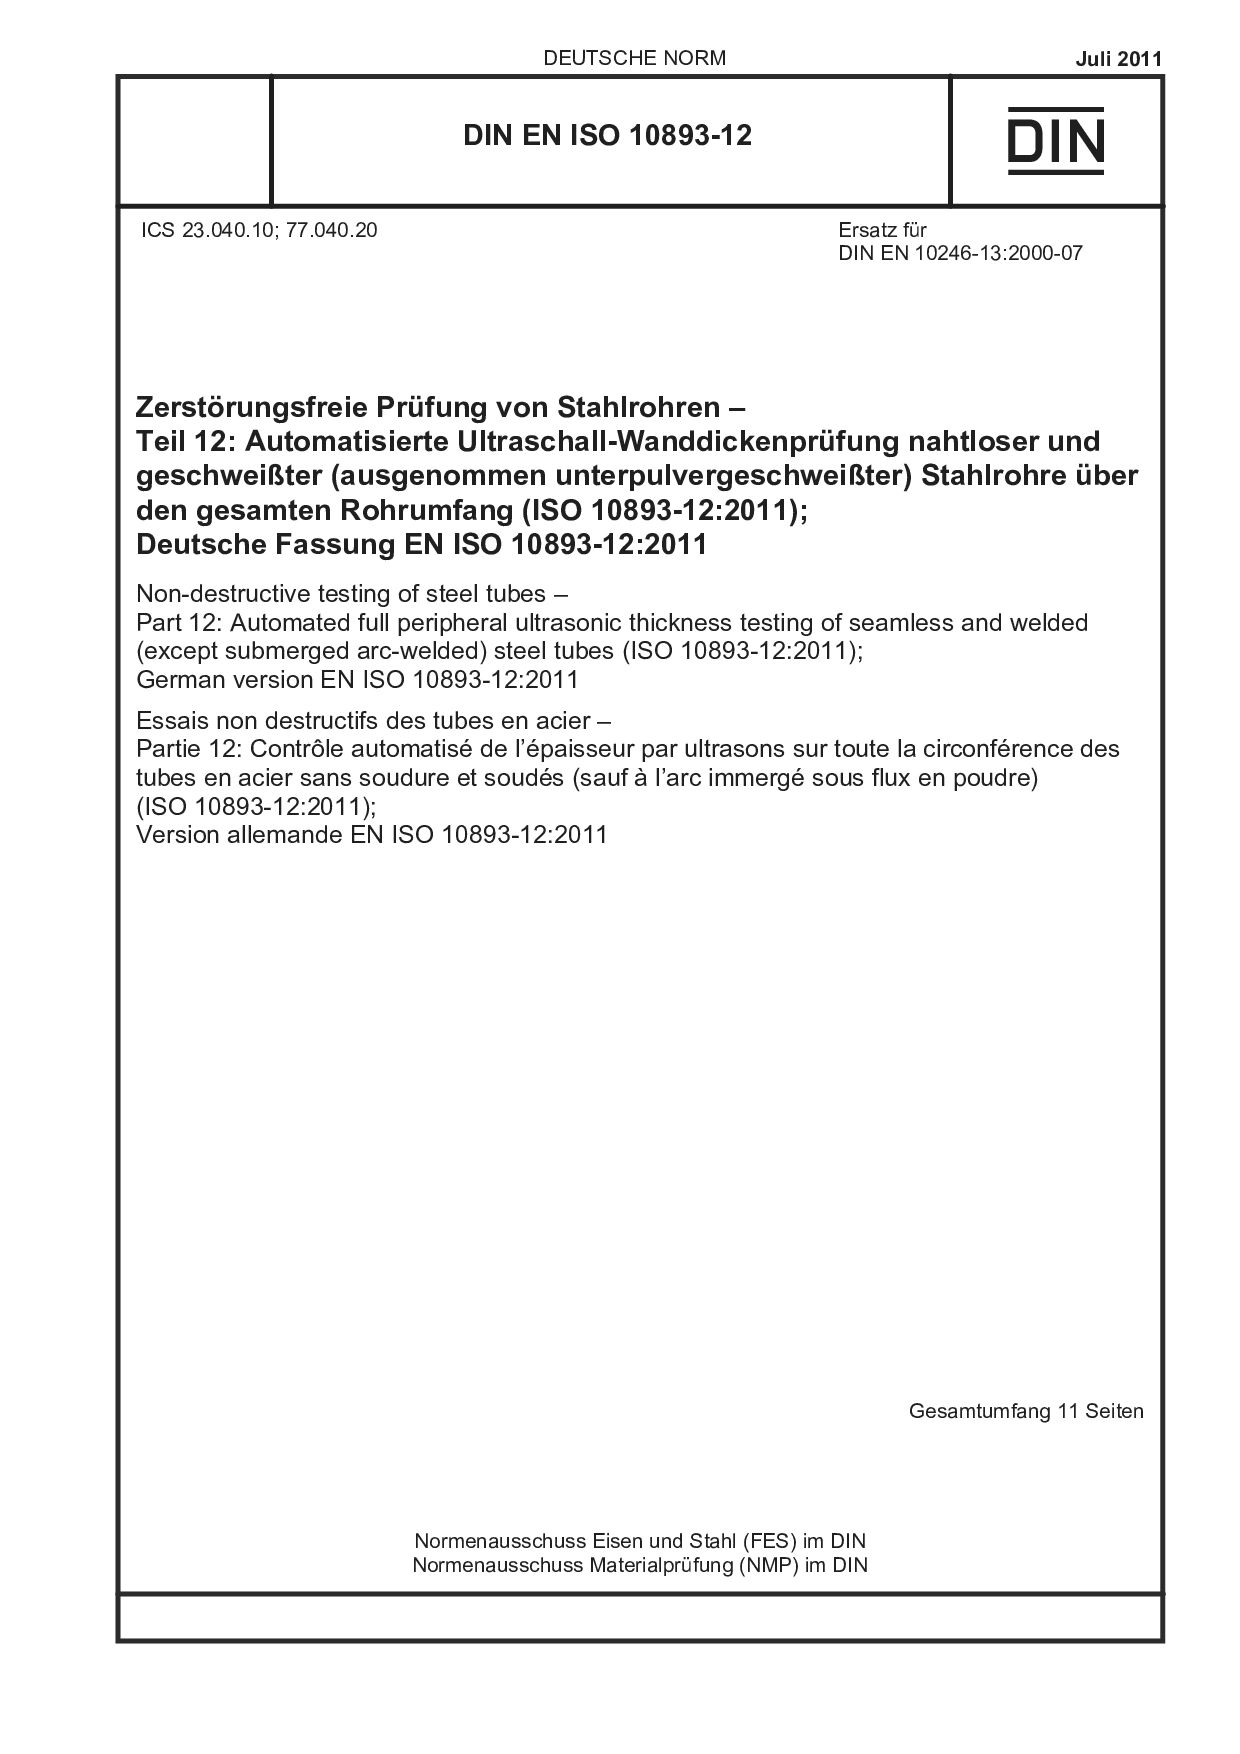 DIN EN ISO 10893-12:2011封面图